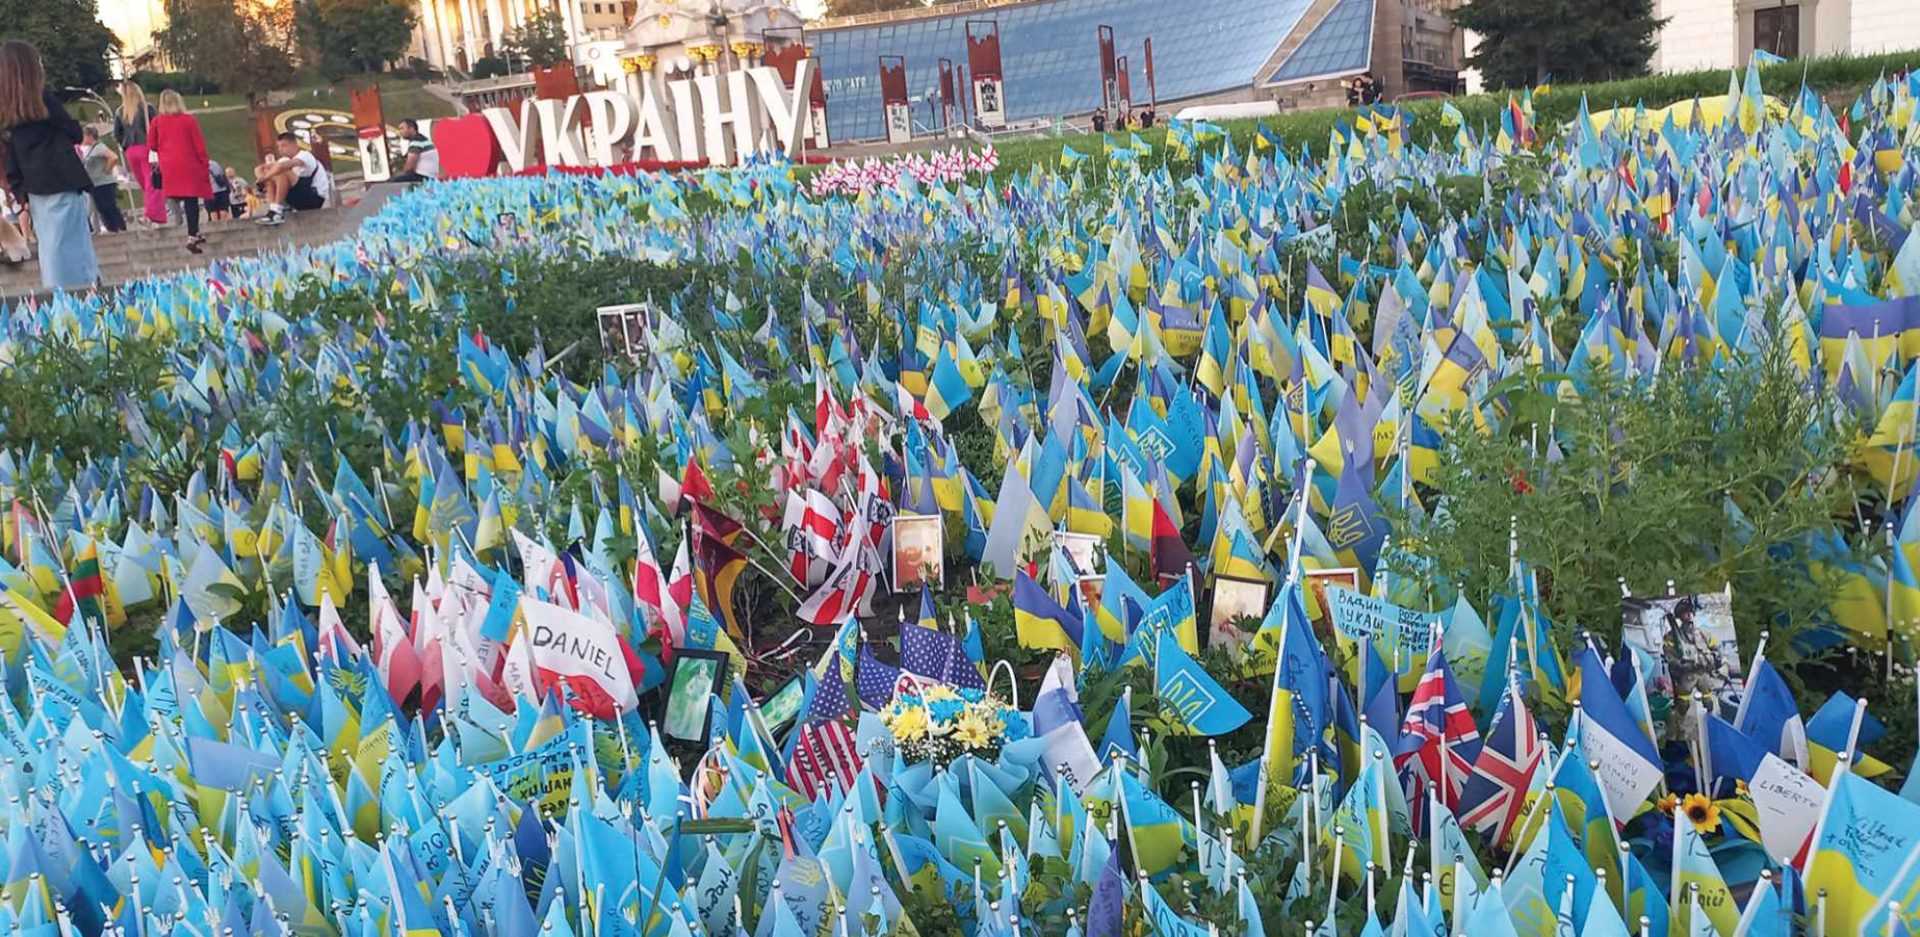 Ουκρανία: Δίπλα στο άγαλμα της Ανεξαρτησίας, μικρές σημαίες στο γρασίδι, μία για κάθε νεκρό.